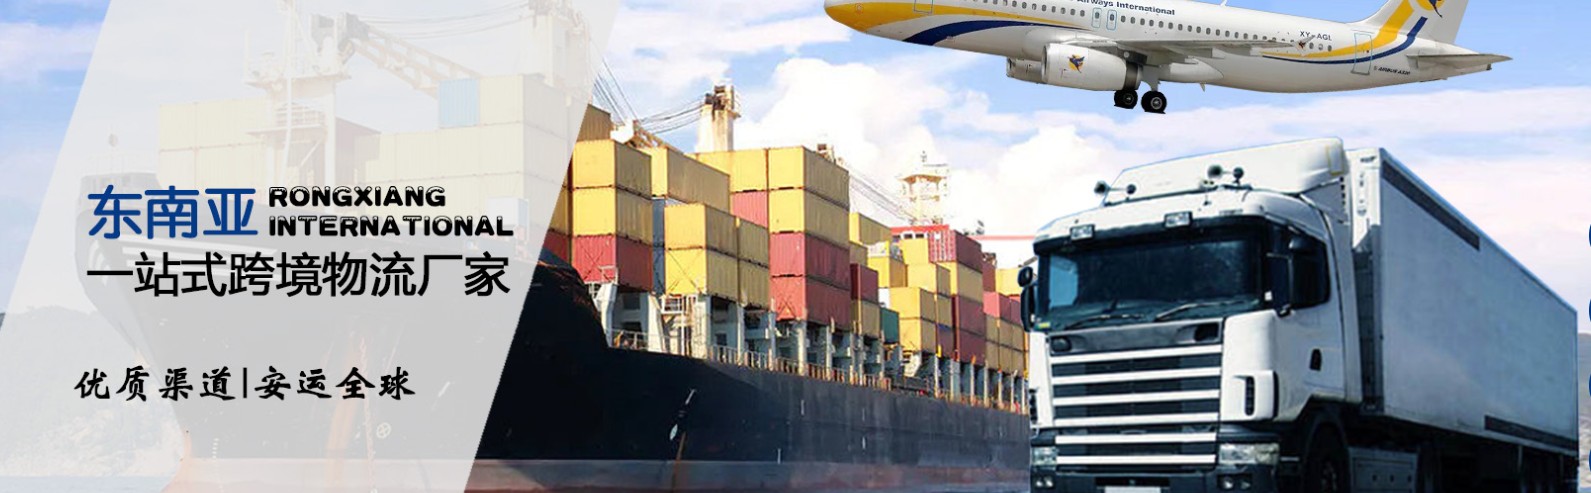 缅甸货货运代理 缅甸国际物流公司  缅甸进出口报关公司 缅甸国际货运代理有限公司